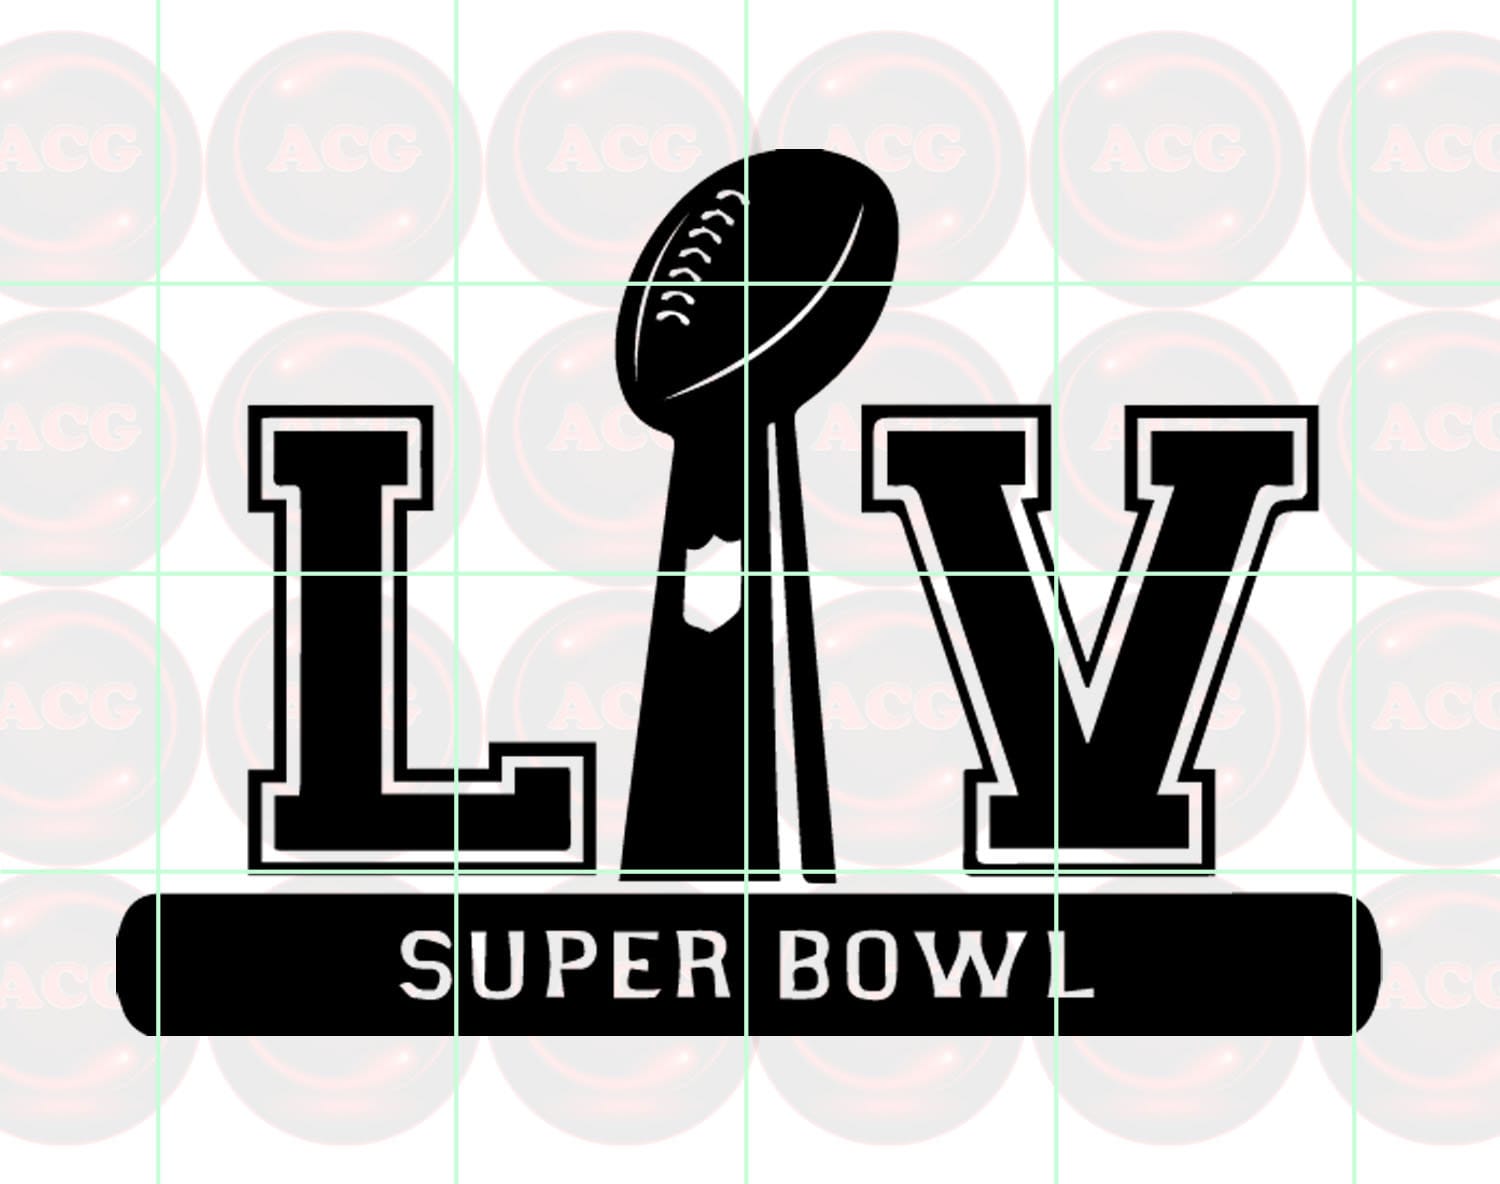 Super Bowl 55 LV Logo Svg, Png, Dxf, Pdf Instant Download Files